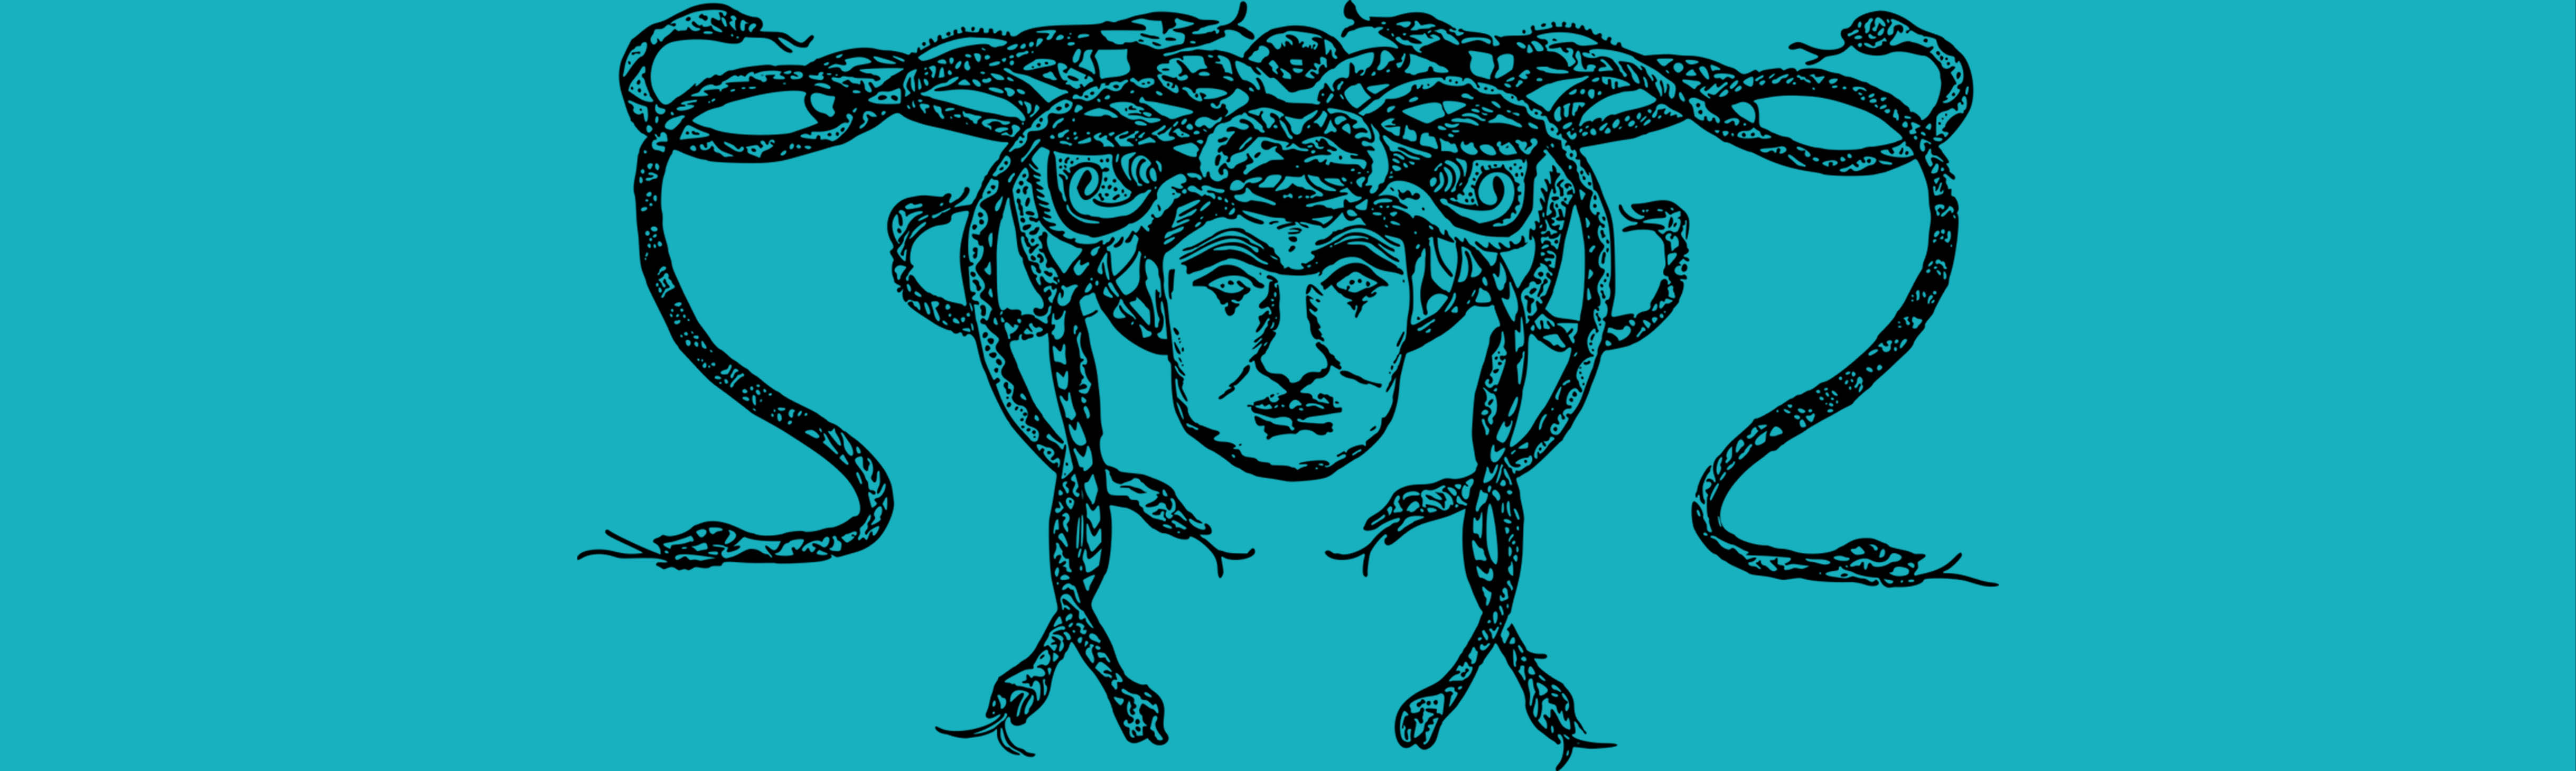 Medusa head from Pixabay